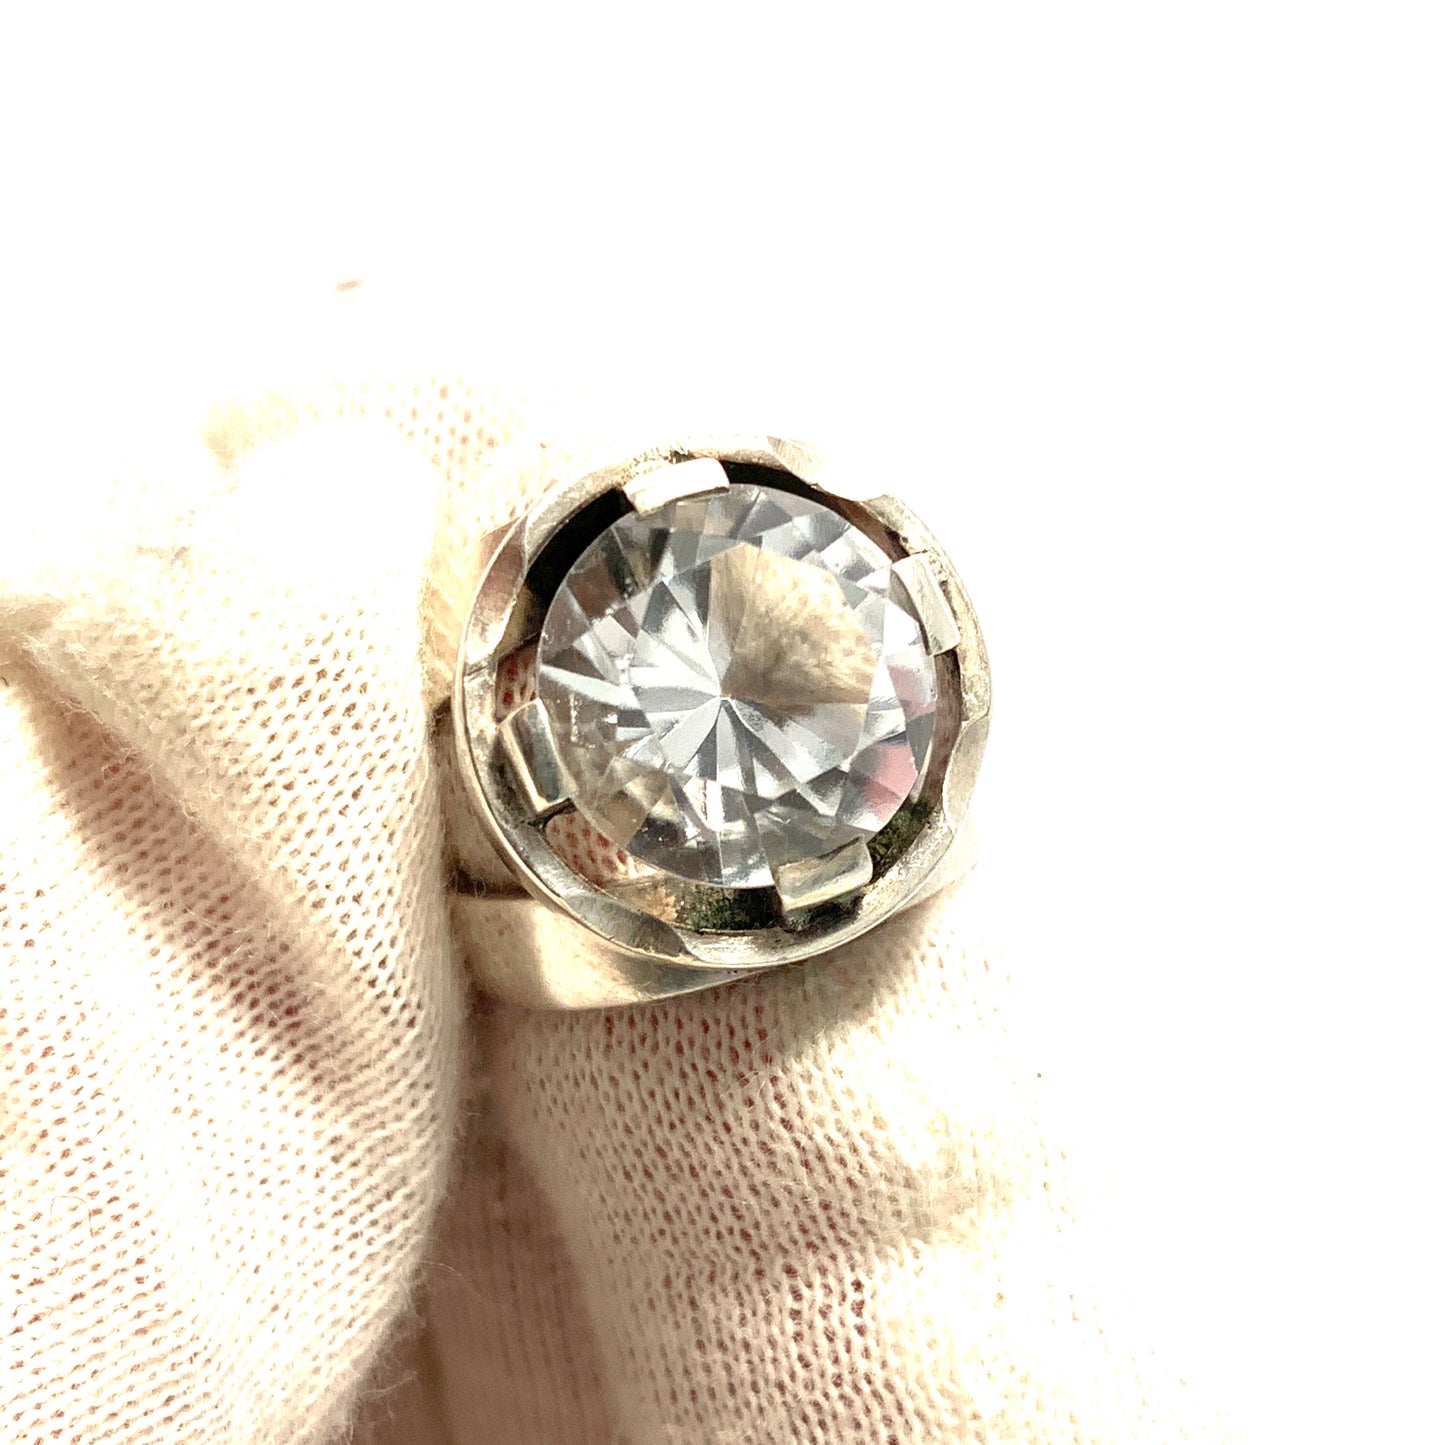 K Gronwall, Sweden 1966. Vintage Modernist Sterling Silver Rock Crystal Ring.